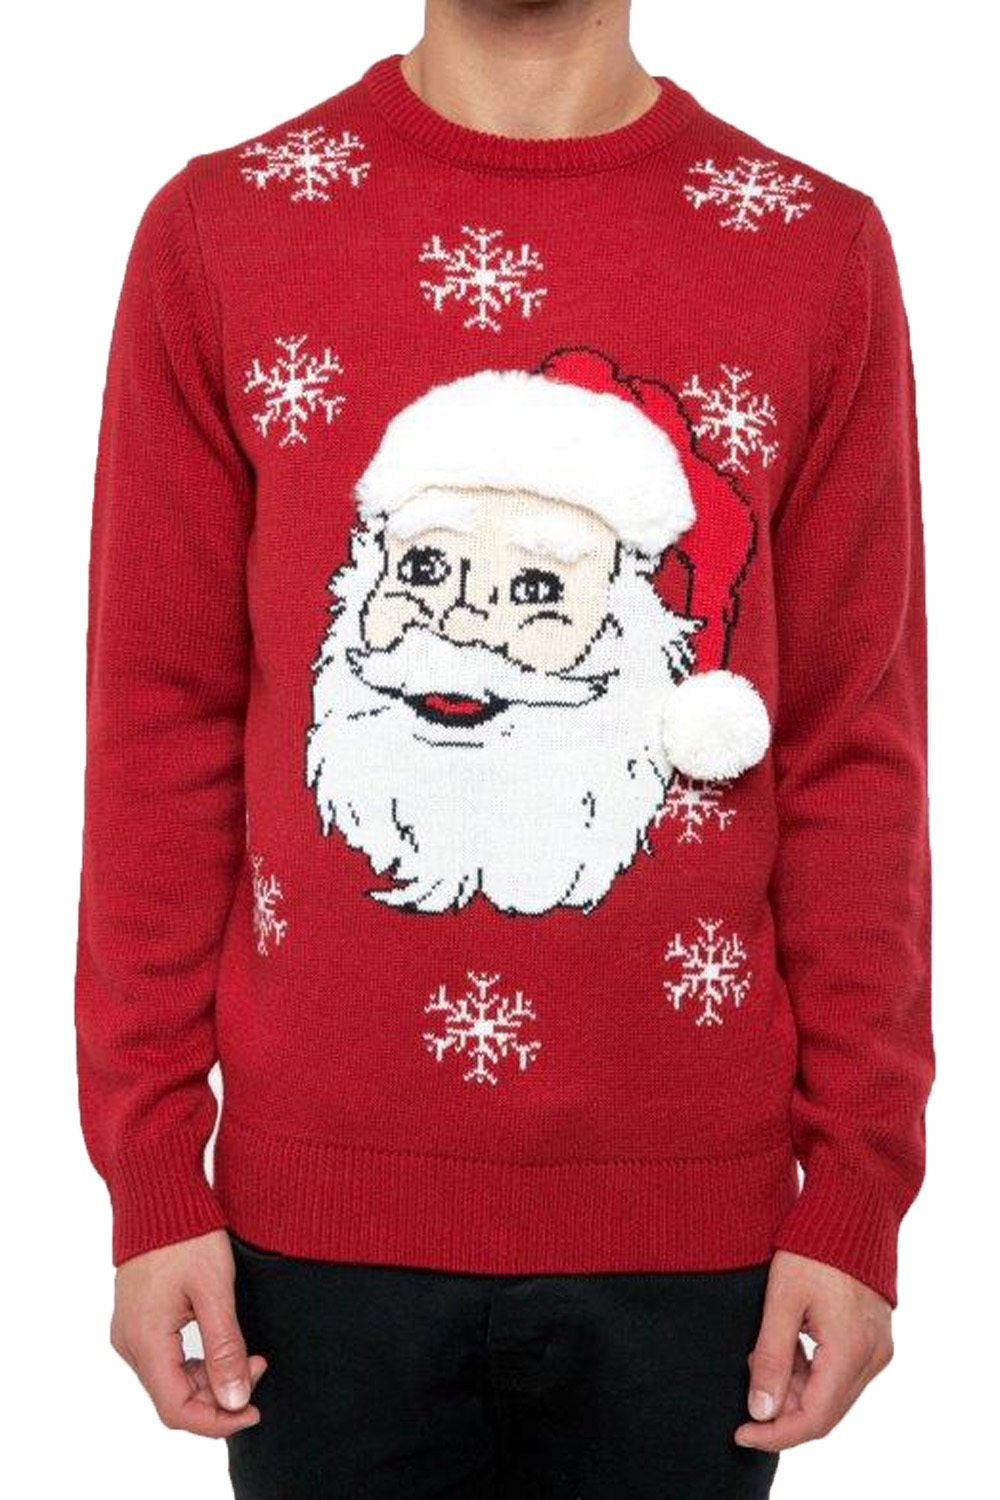 Threadbare Mens Singing Santa Head 3D Christmas Jumper Novelty Xmas Sweater